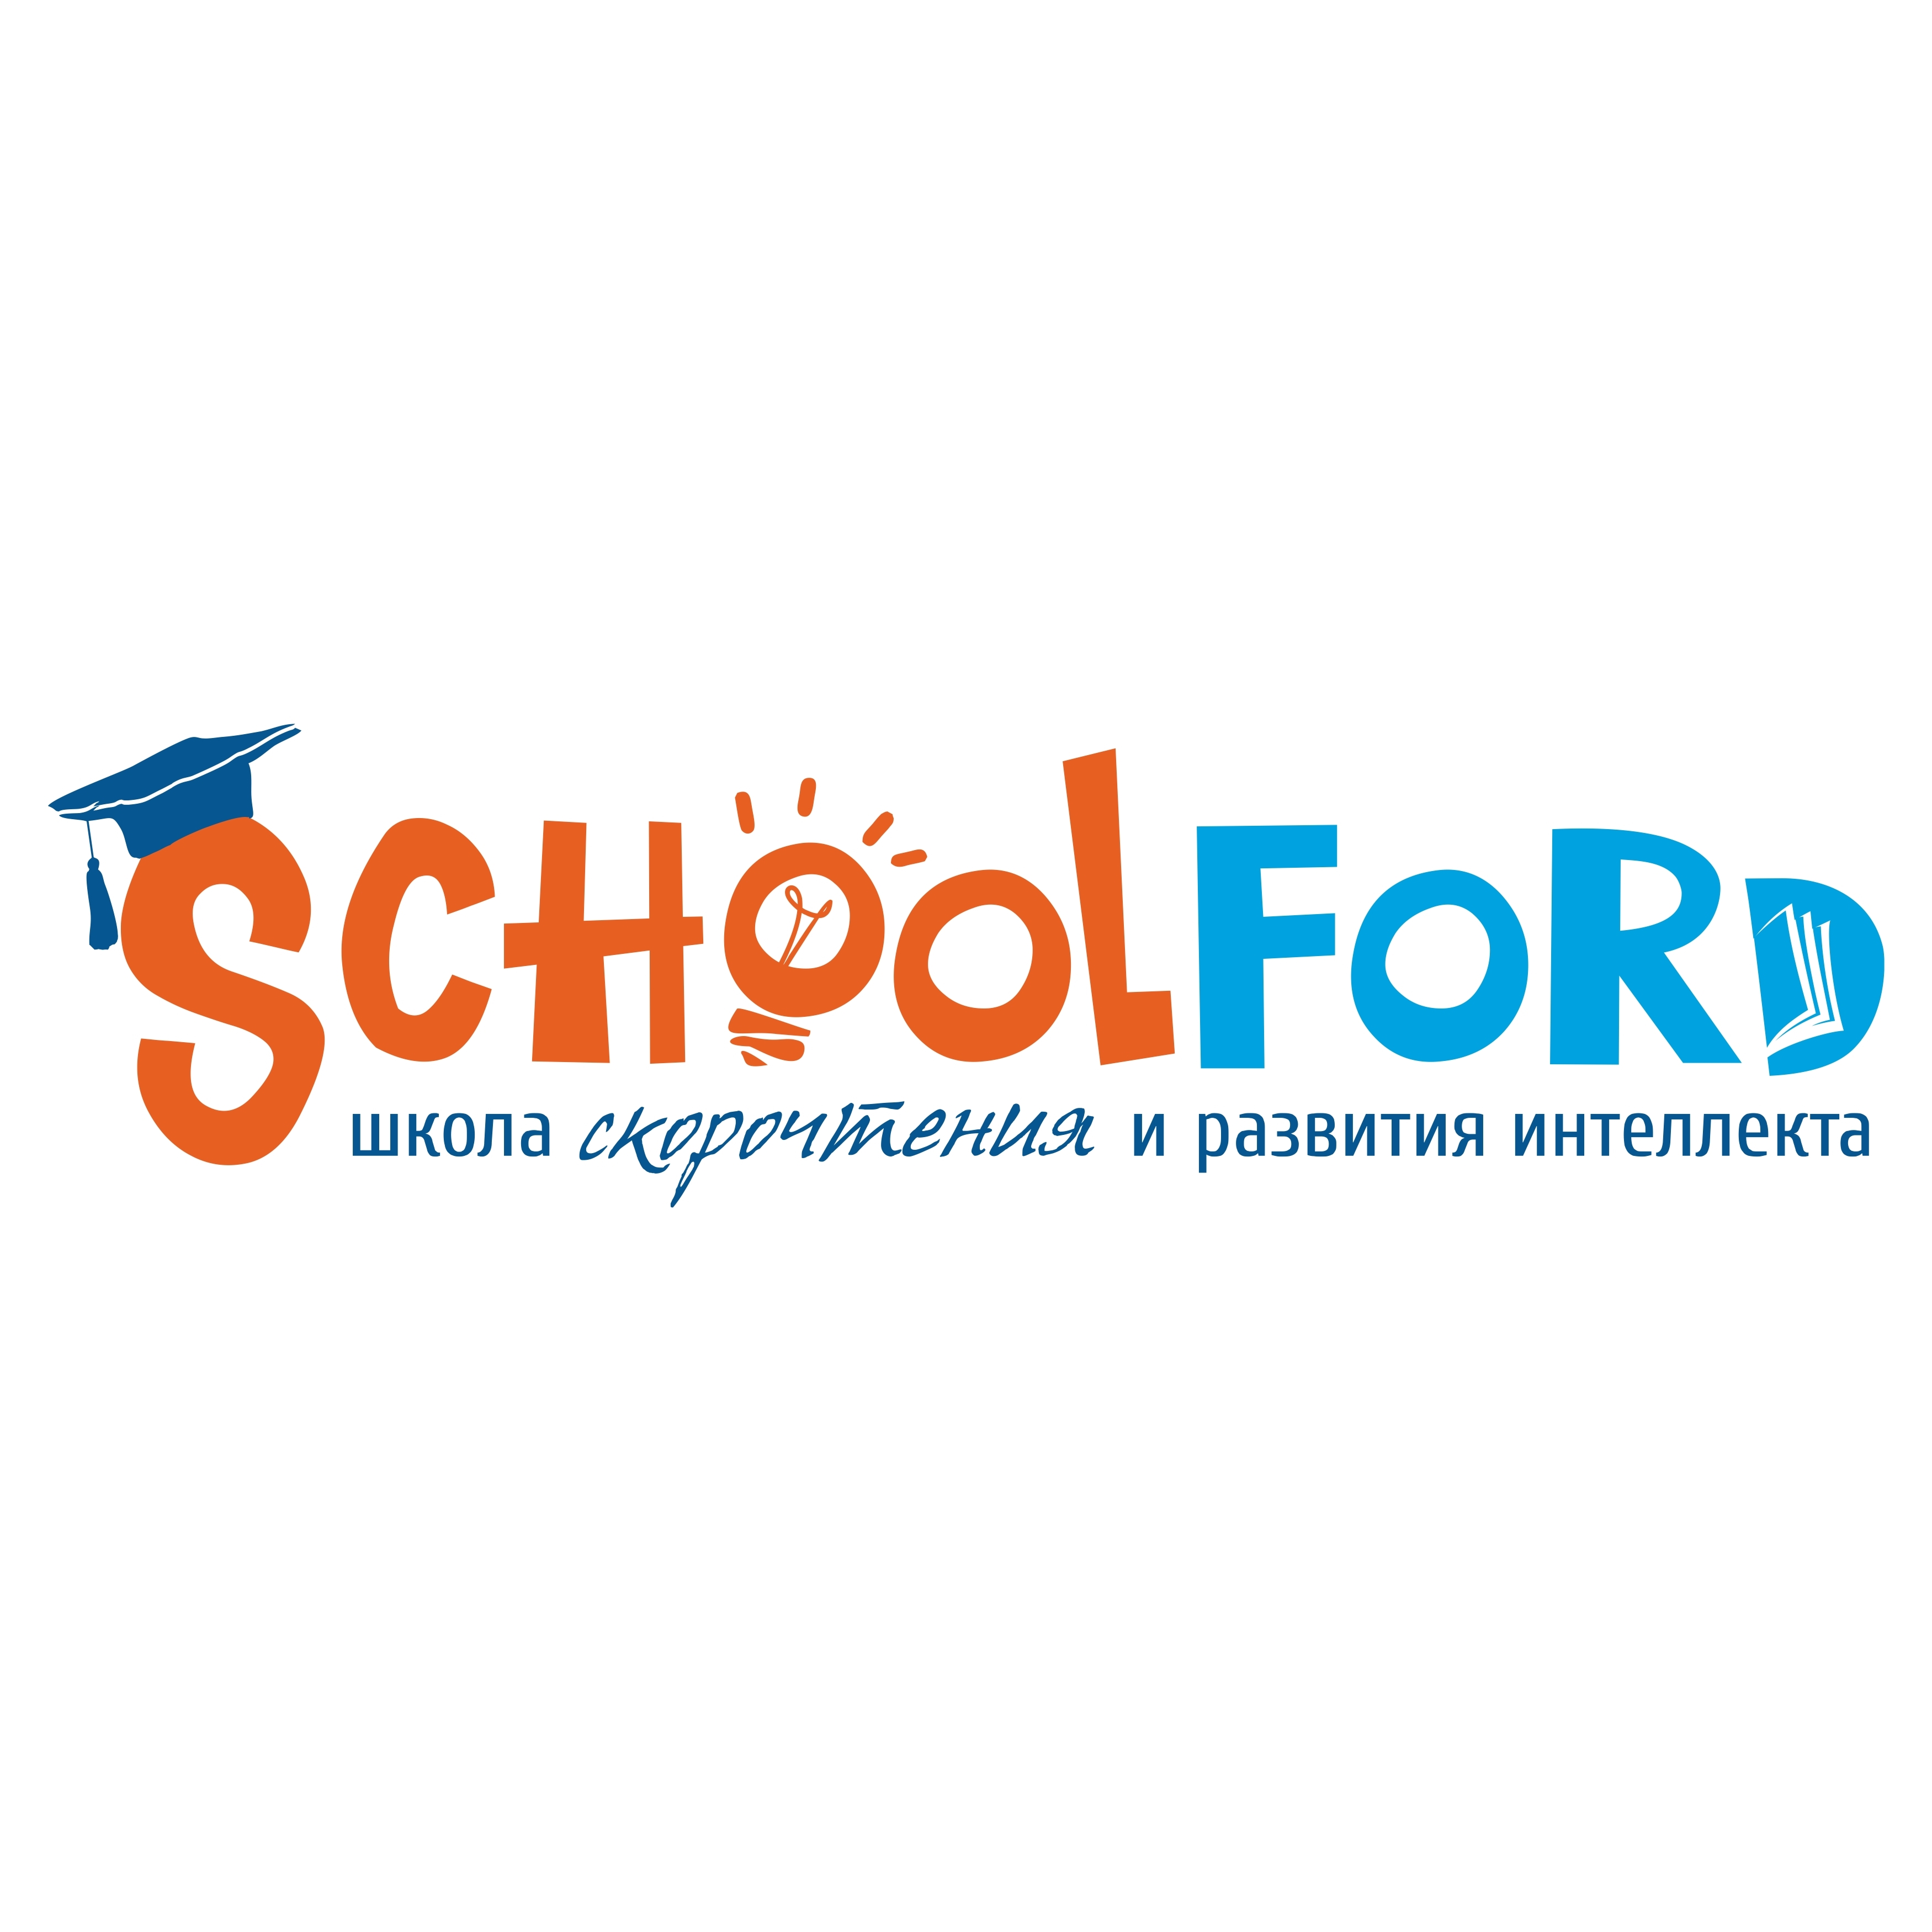 Школа скорочтения, развития интеллекта и памяти Schoolford